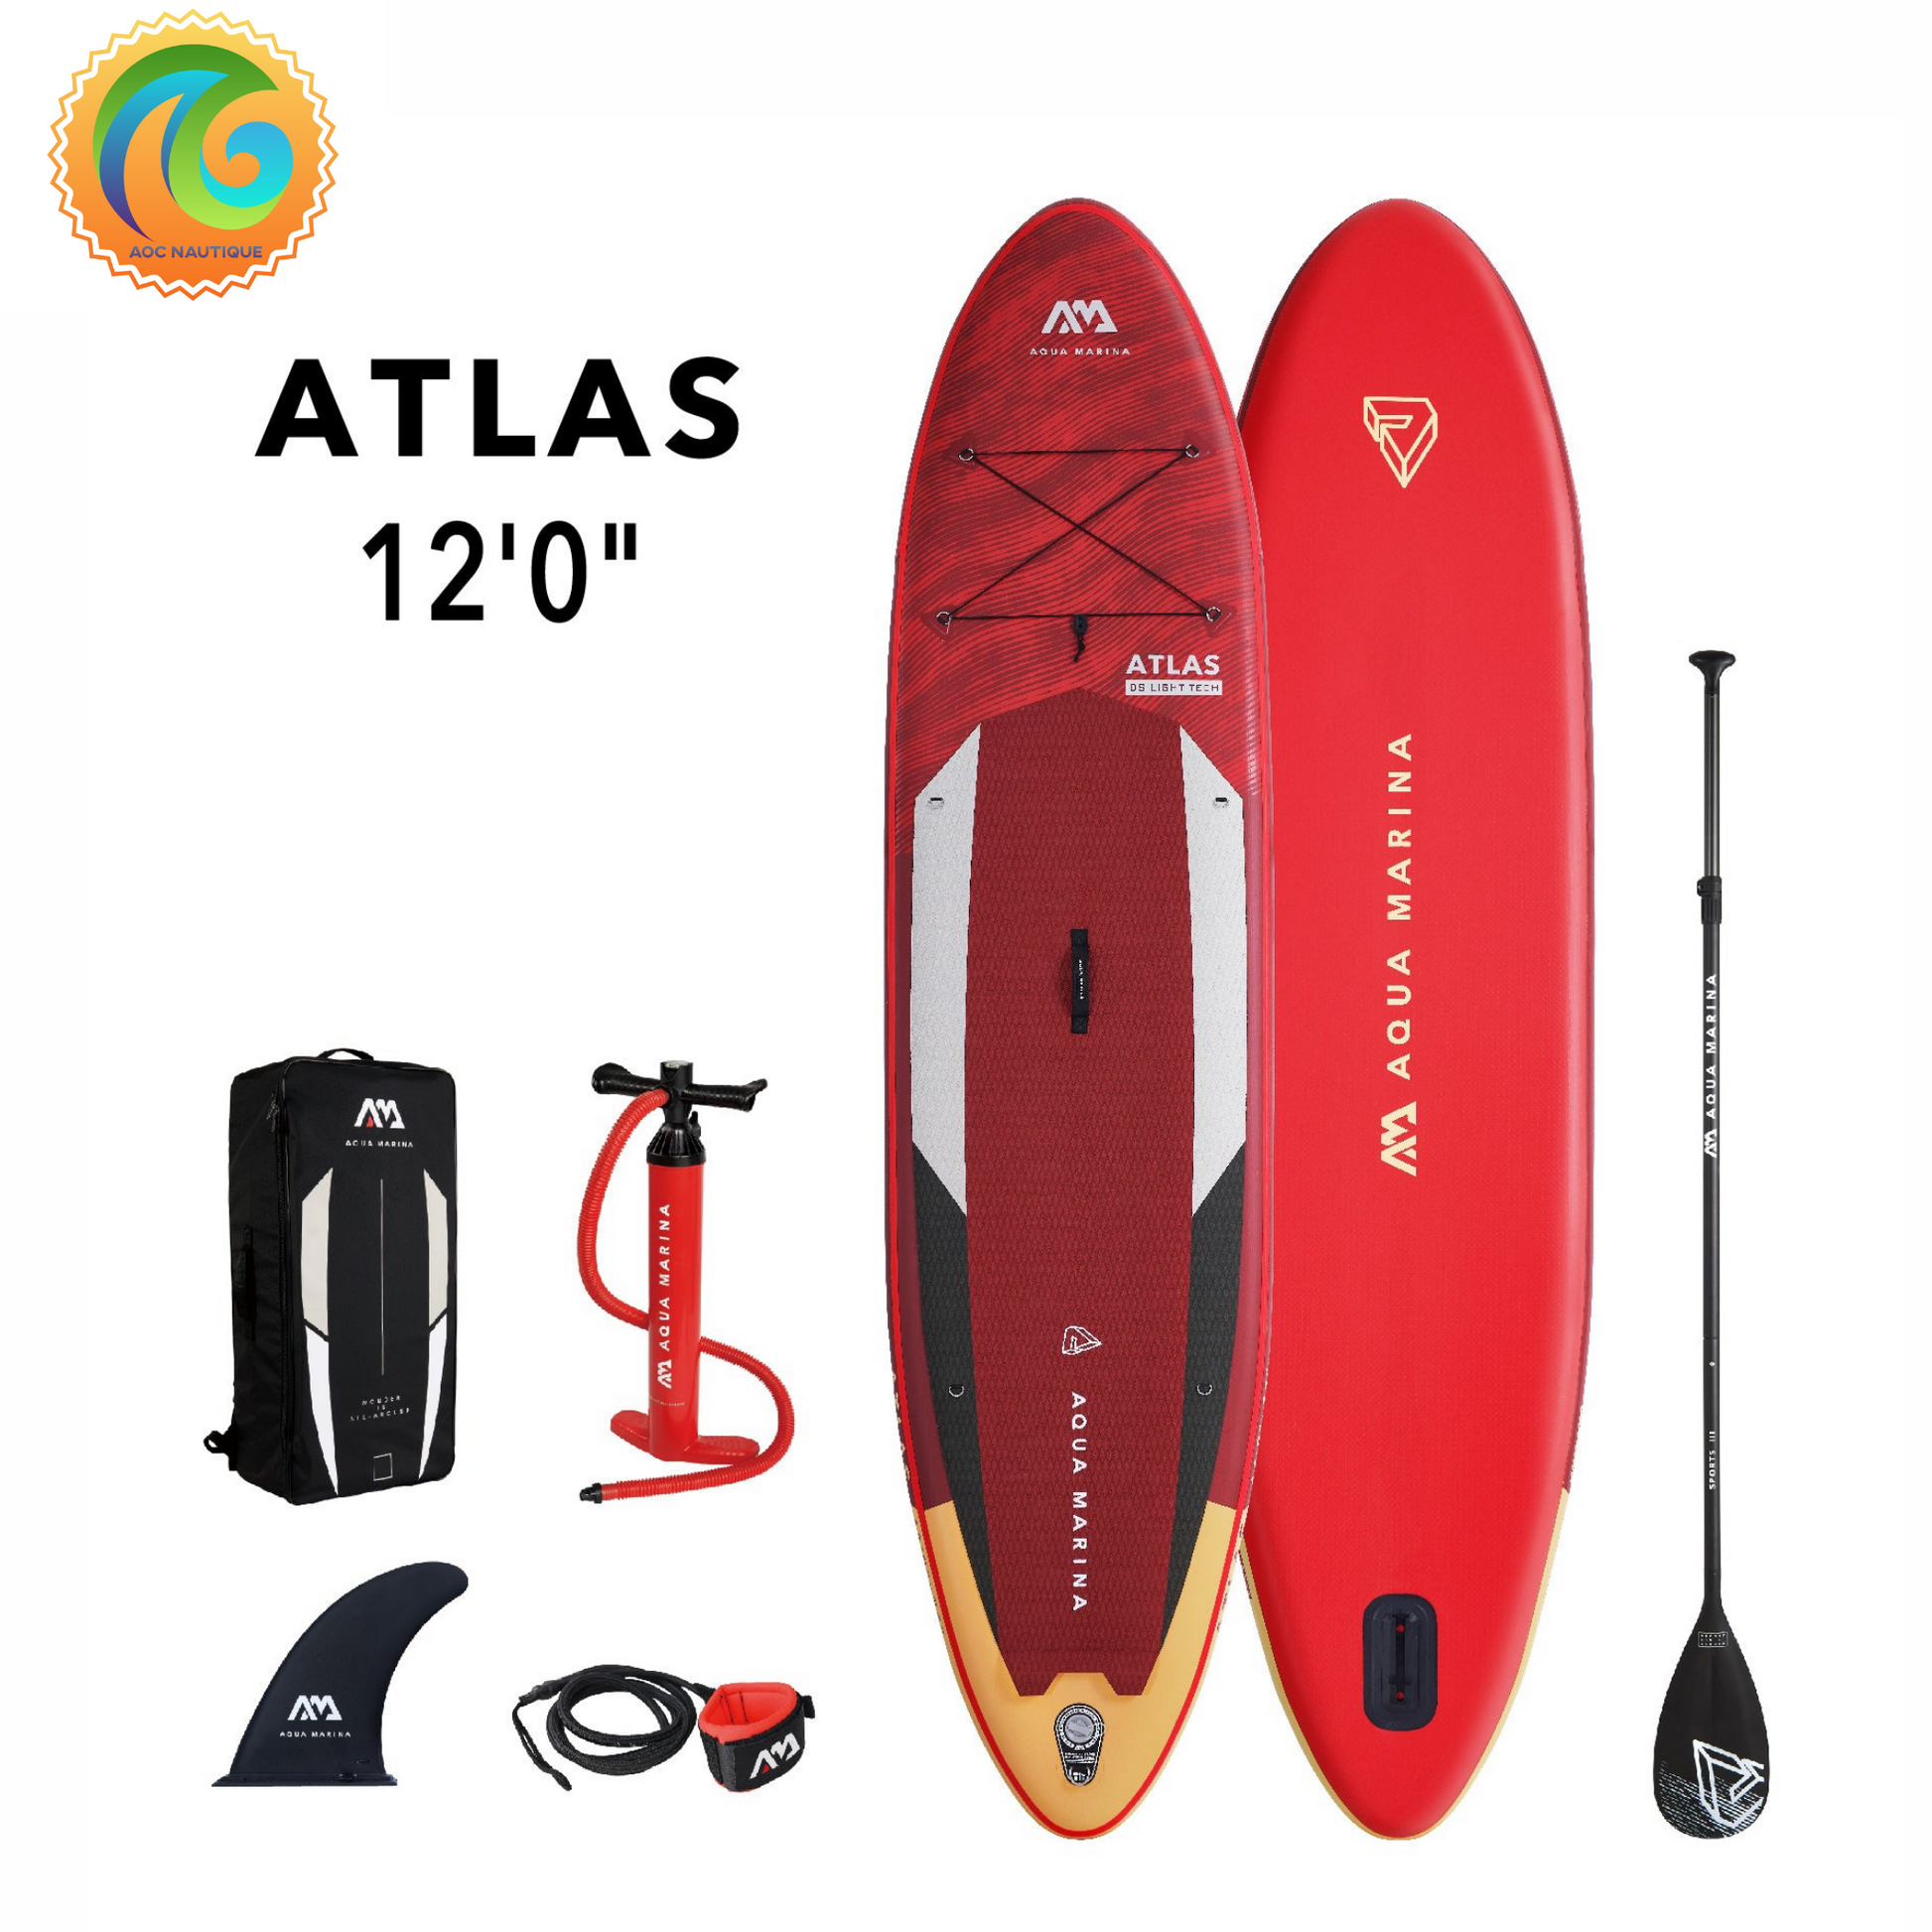 Achat et vente de Paddle board Aquamarina Atlas # BT-19ATP incluant les accessoires.  Meilleur prix au Québec sur ce sup.  